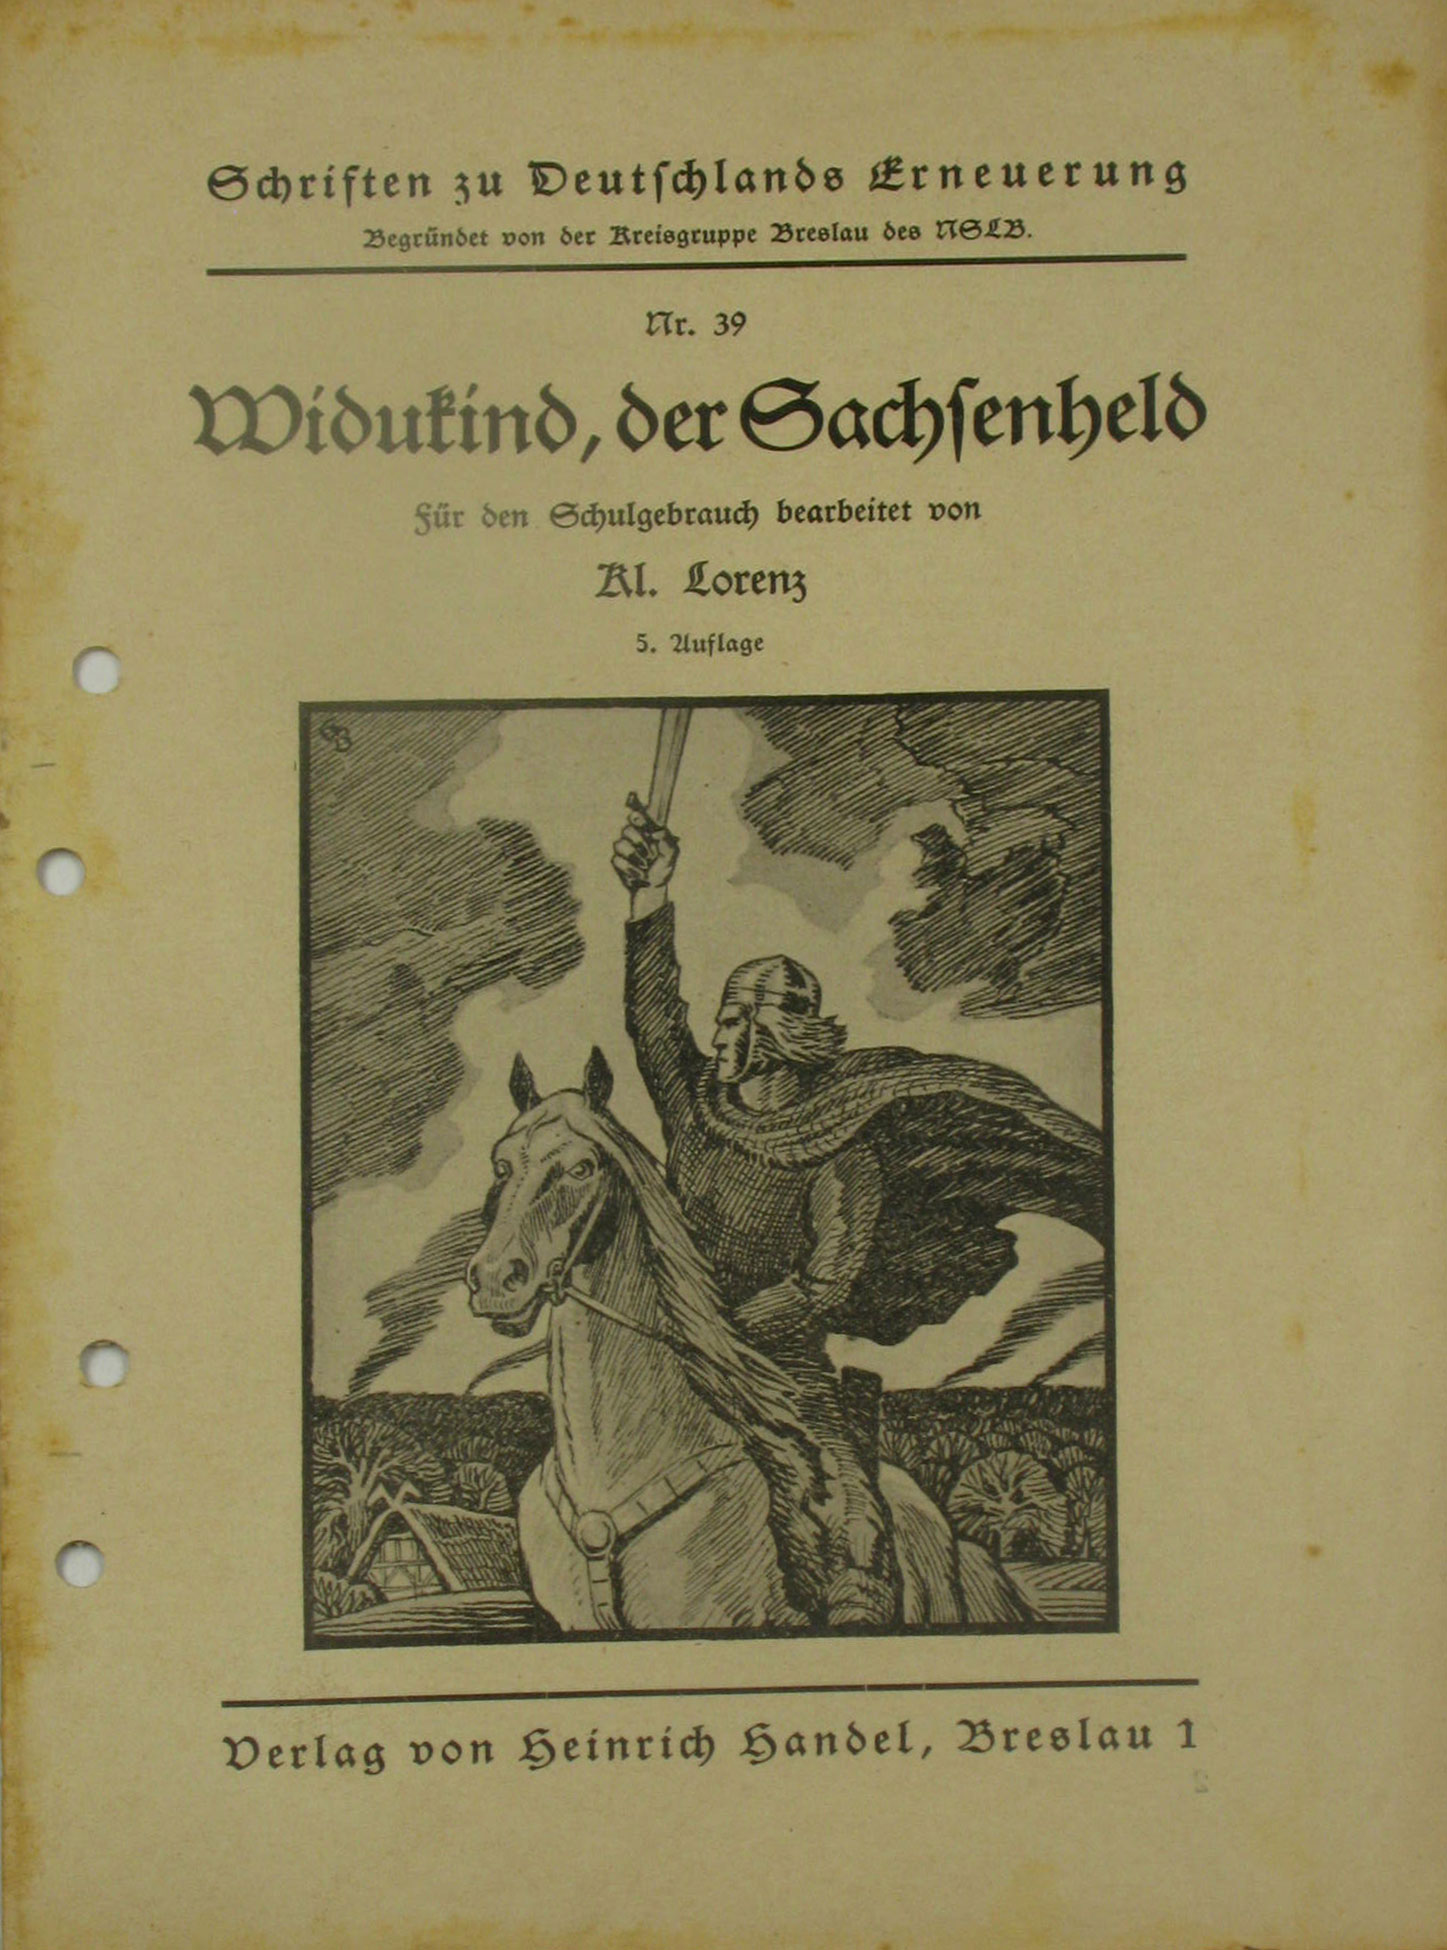 Lorenz, Kl.:  Widukind, der Sachsenheld. Schriften zu Deutschlands Erneuerung Nr. 39. 